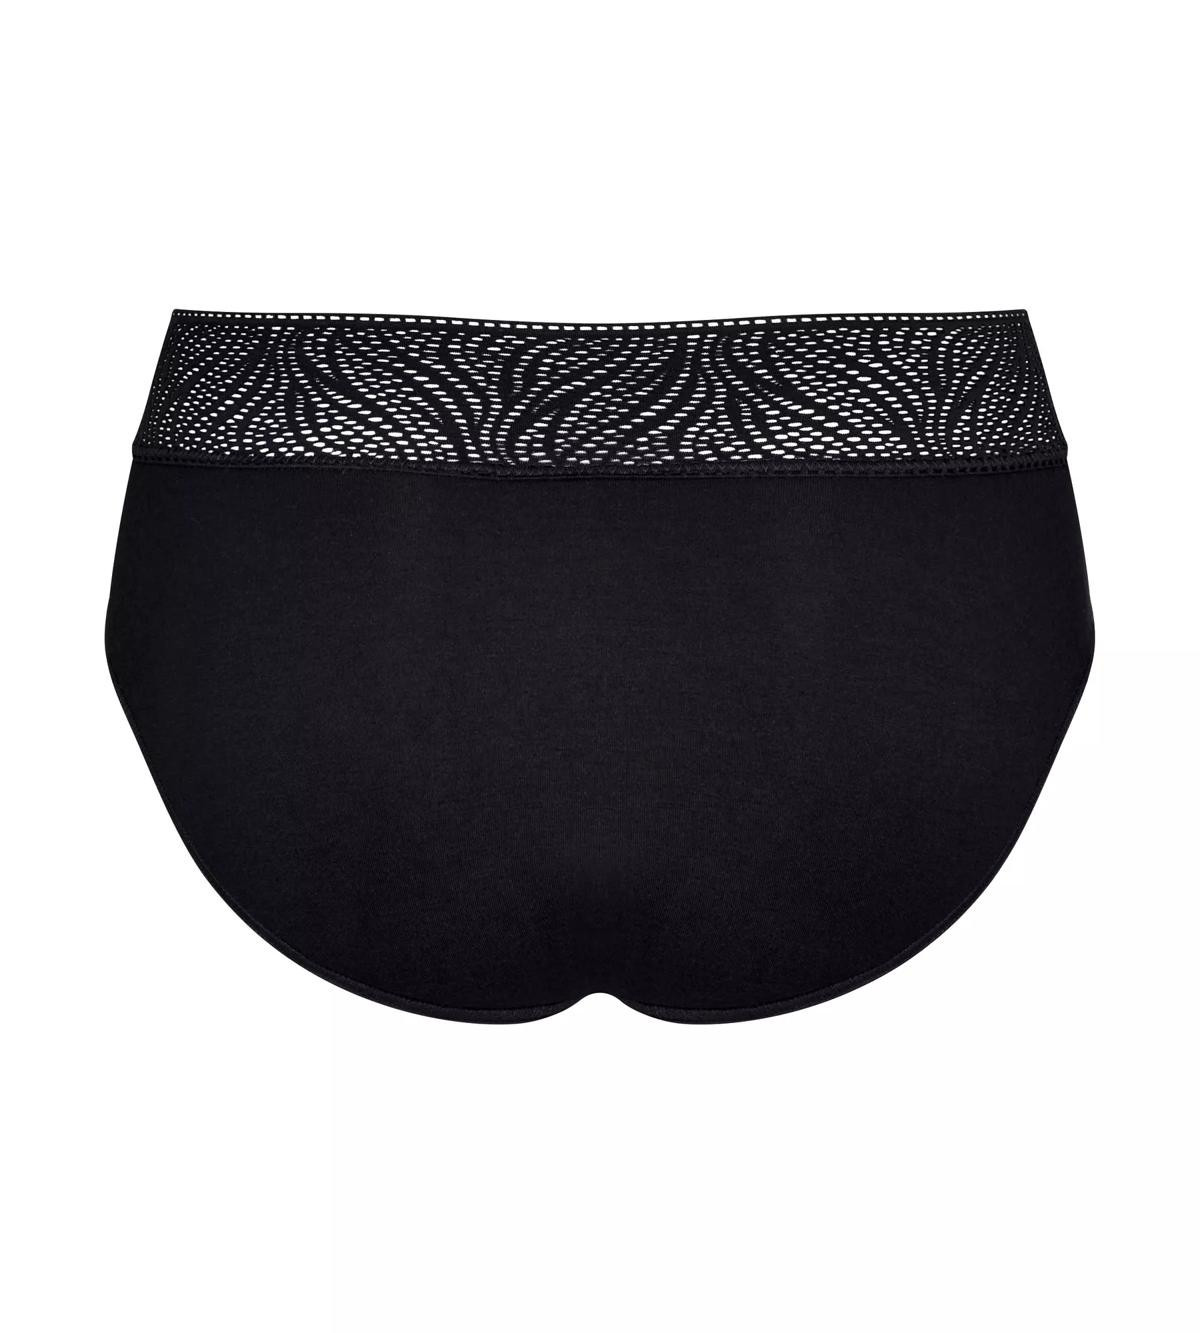 Dámské menstruační kalhotky Sloggi model 17611707 Pants Hipster Light černé - Triumph Barva: černá (0004), Velikost: 000L